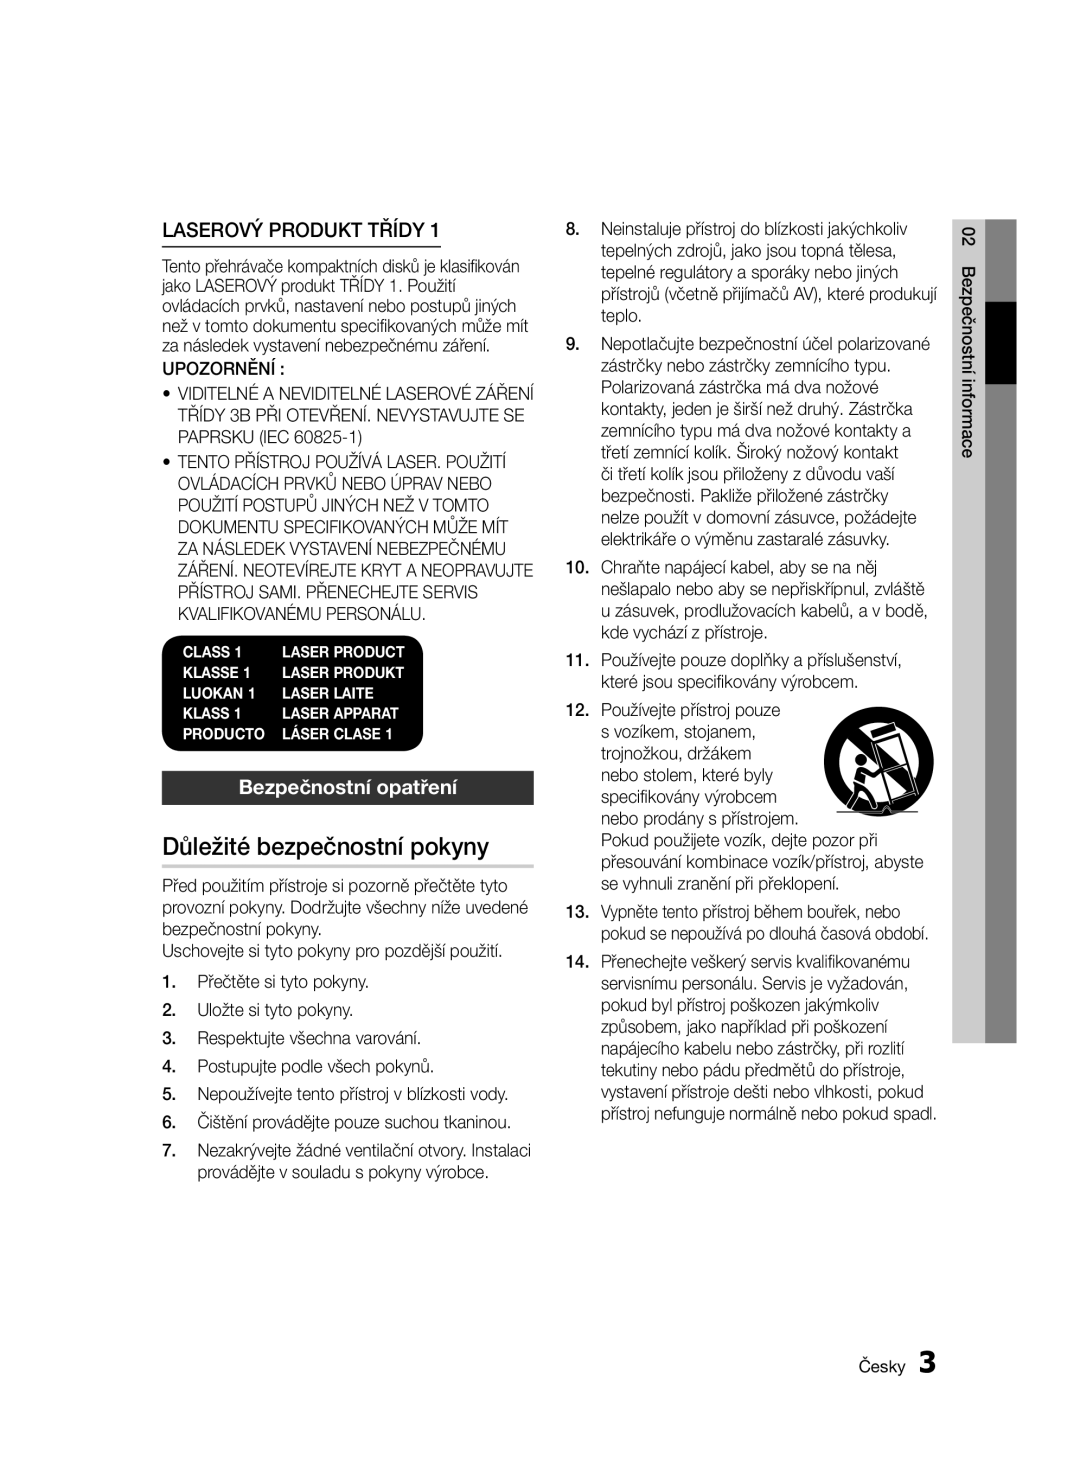 Samsung BD-E6300/EN Důležité bezpečnostní pokyny, Laserový Produkt Třídy, Bezpečnostní opatření, Bezpečnostní informace 